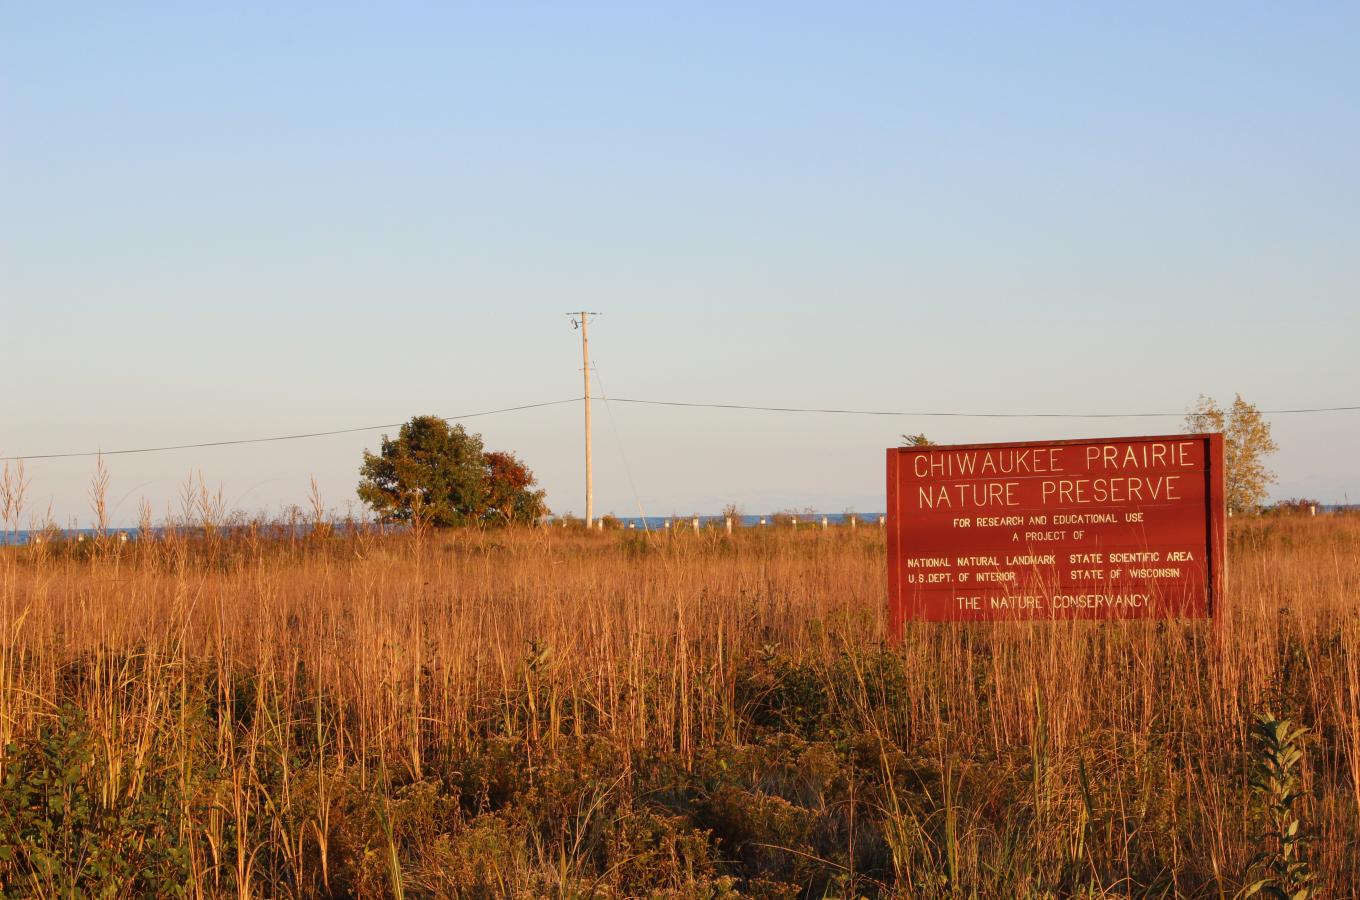 Chiwaukee Prairie